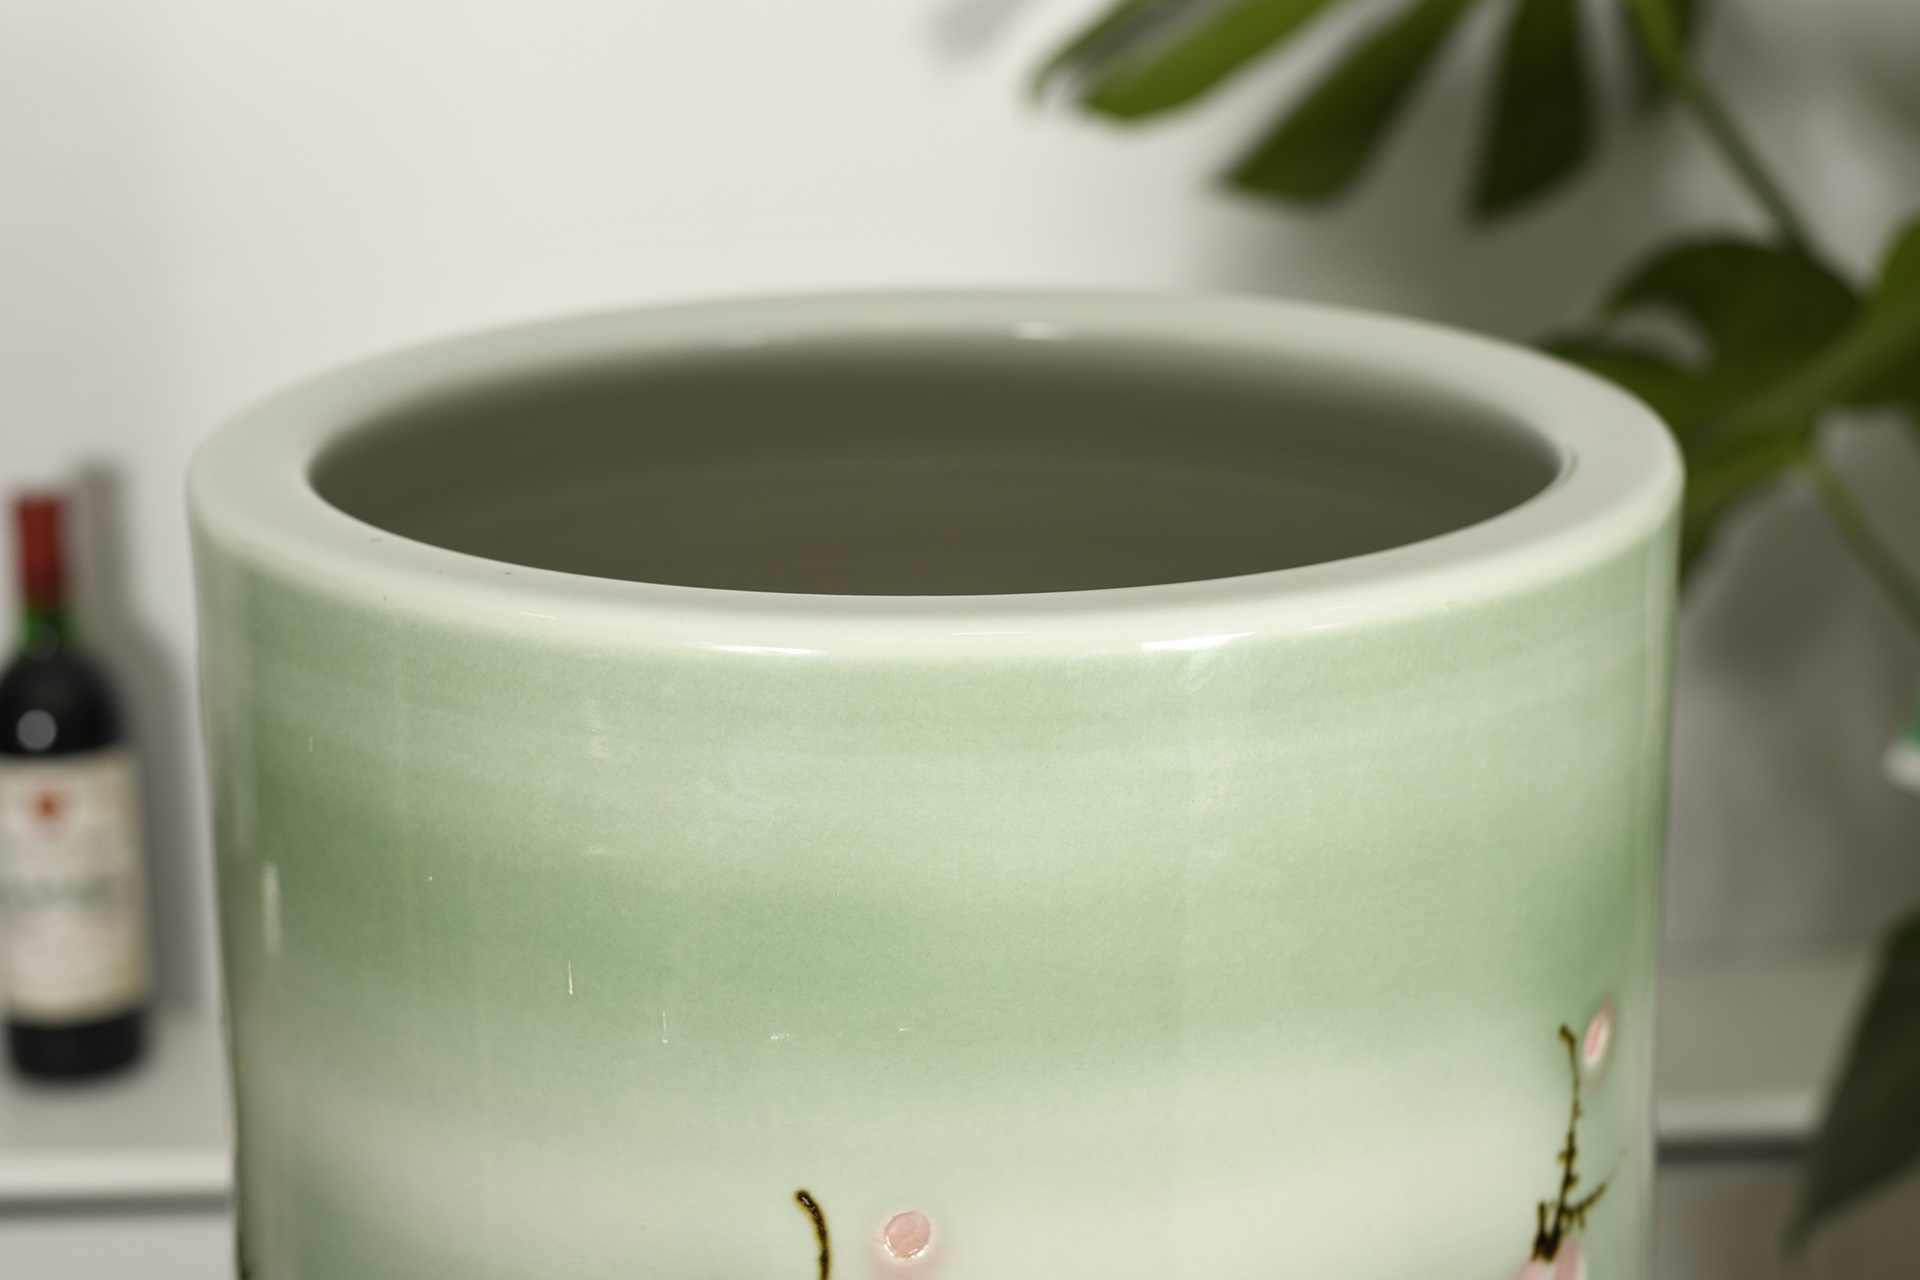 140cm Hand Made Porcelain Vase